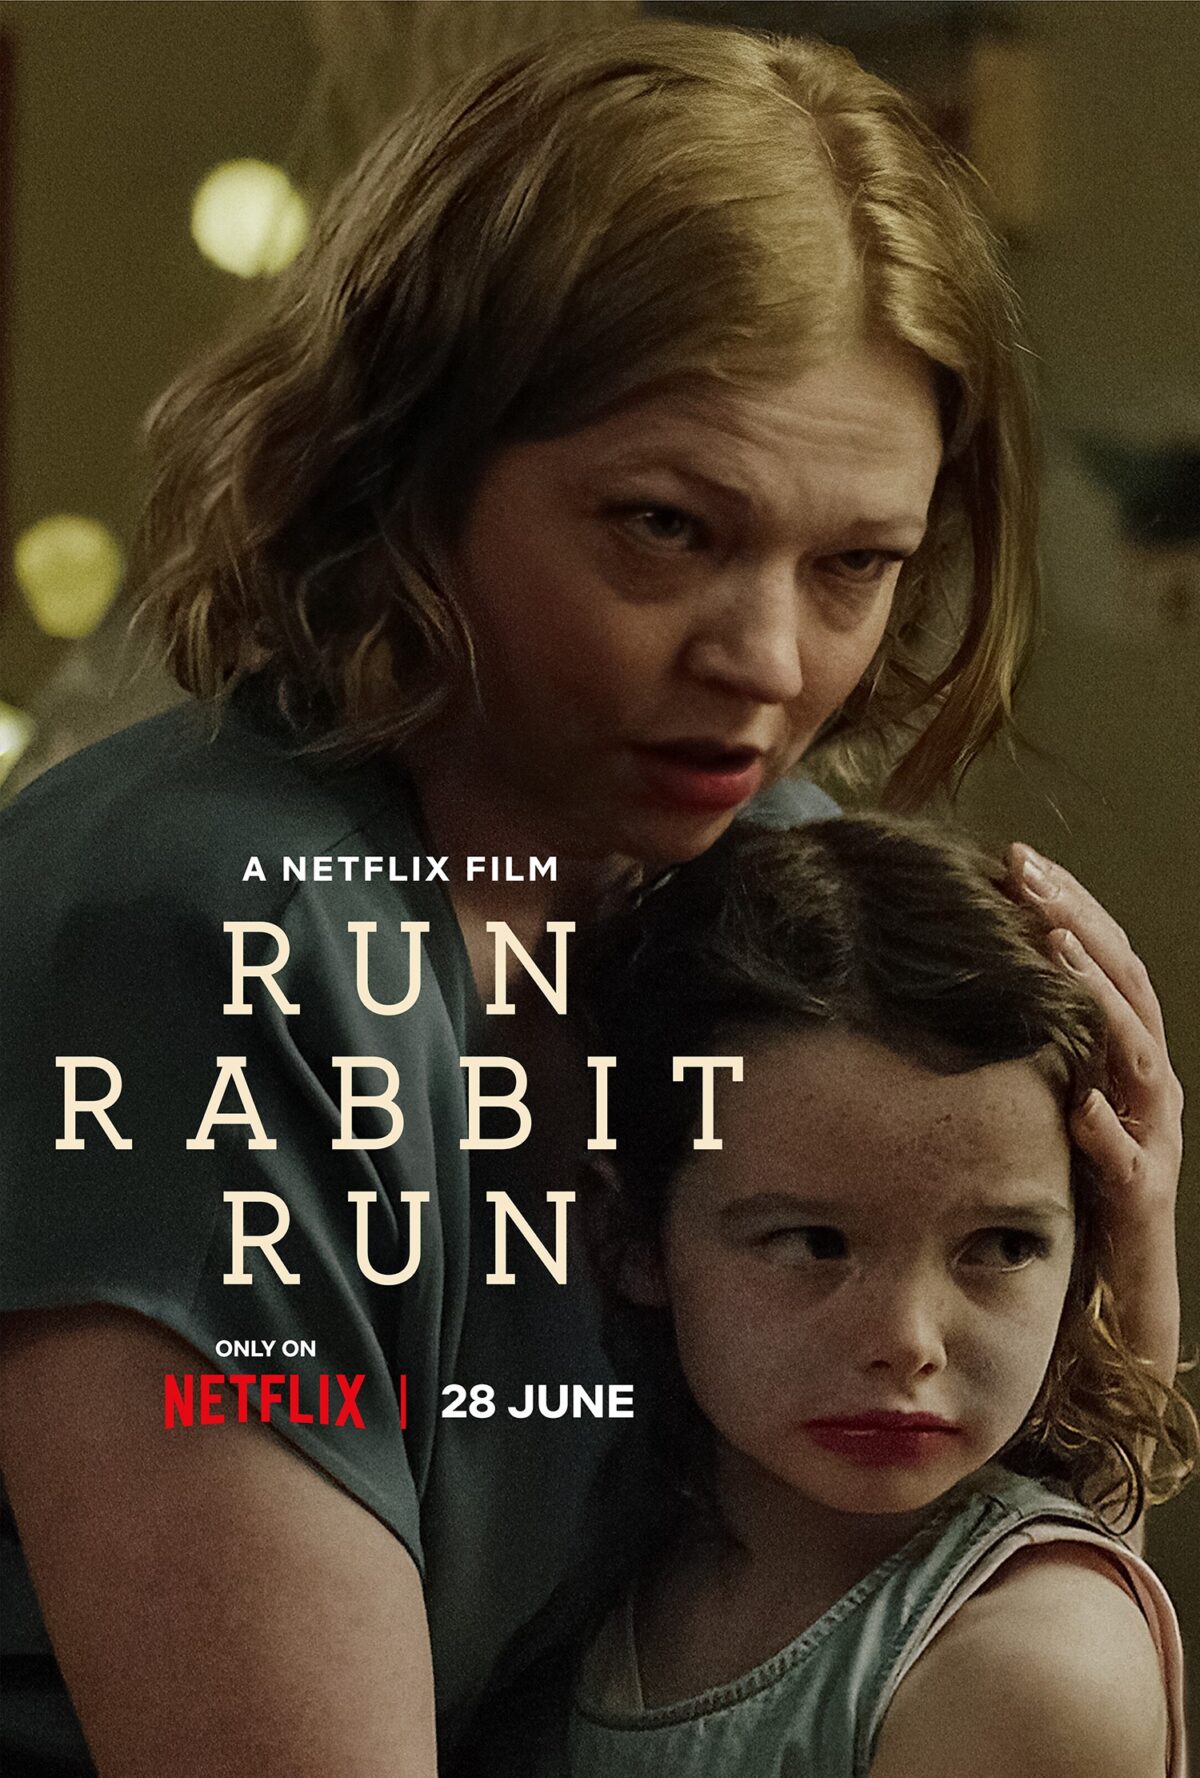 Run Rabbit Run on Netflix hits 3 in global charts TV Central